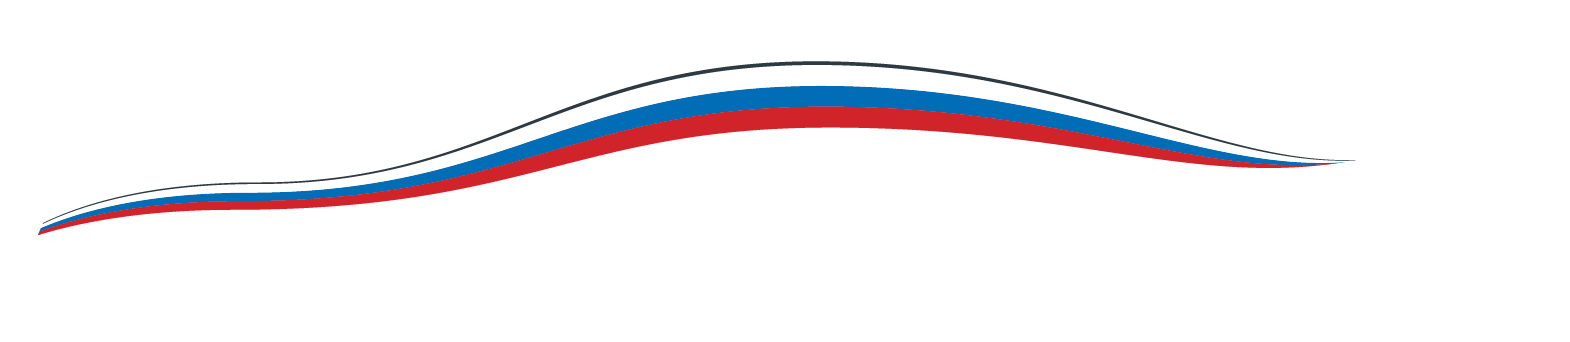 Иконка автобиля года 2023 в виде флага России